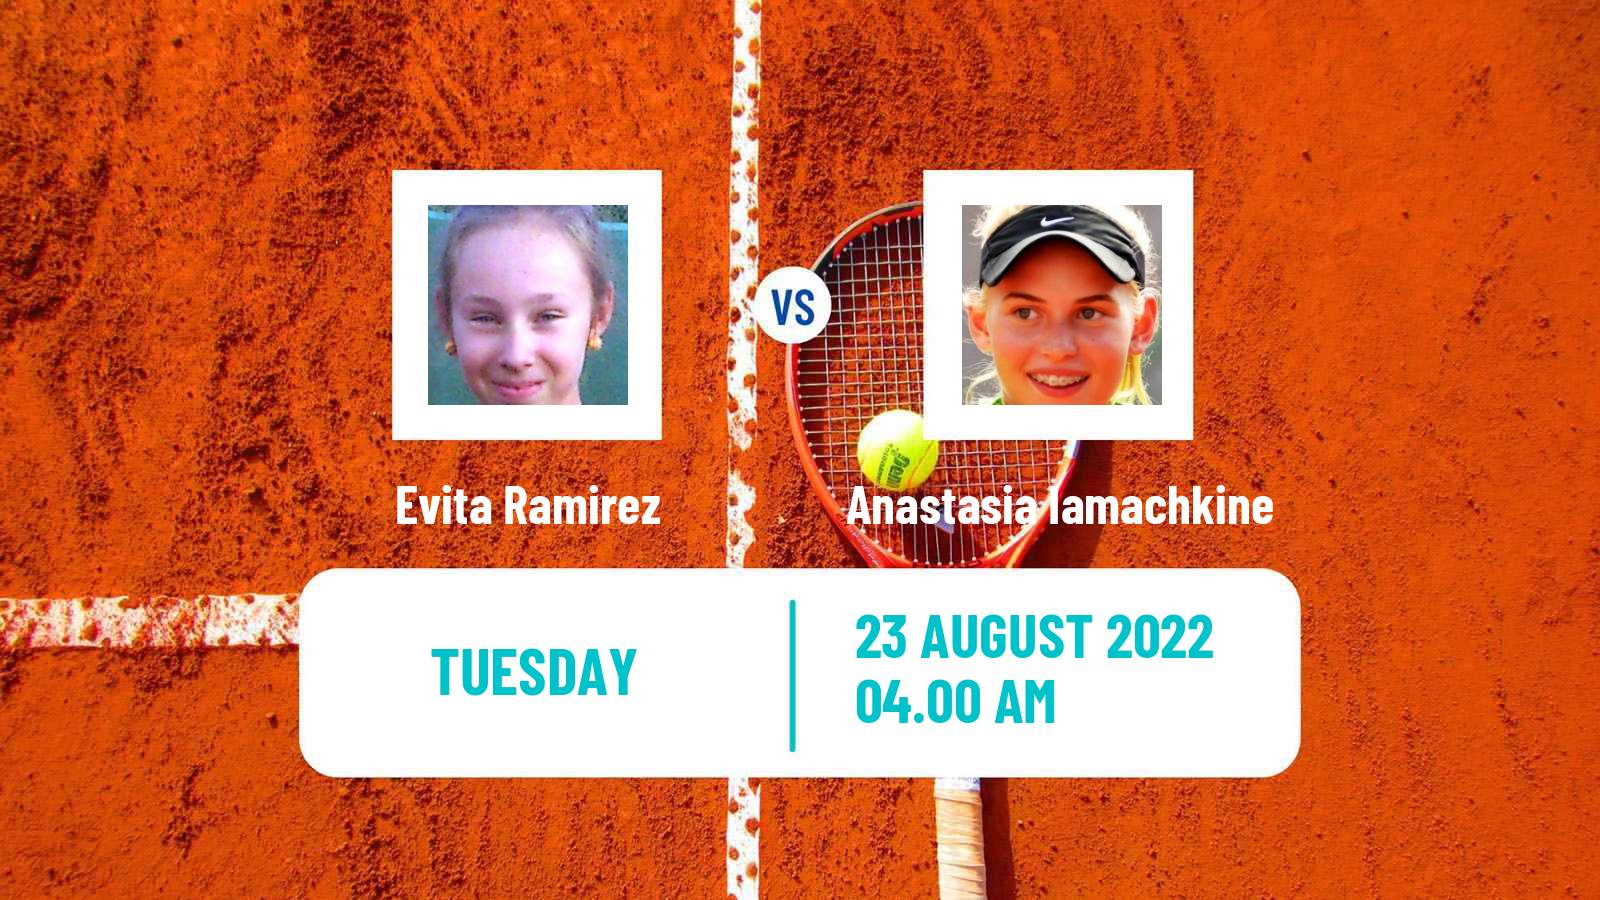 Tennis ITF Tournaments Evita Ramirez - Anastasia Iamachkine